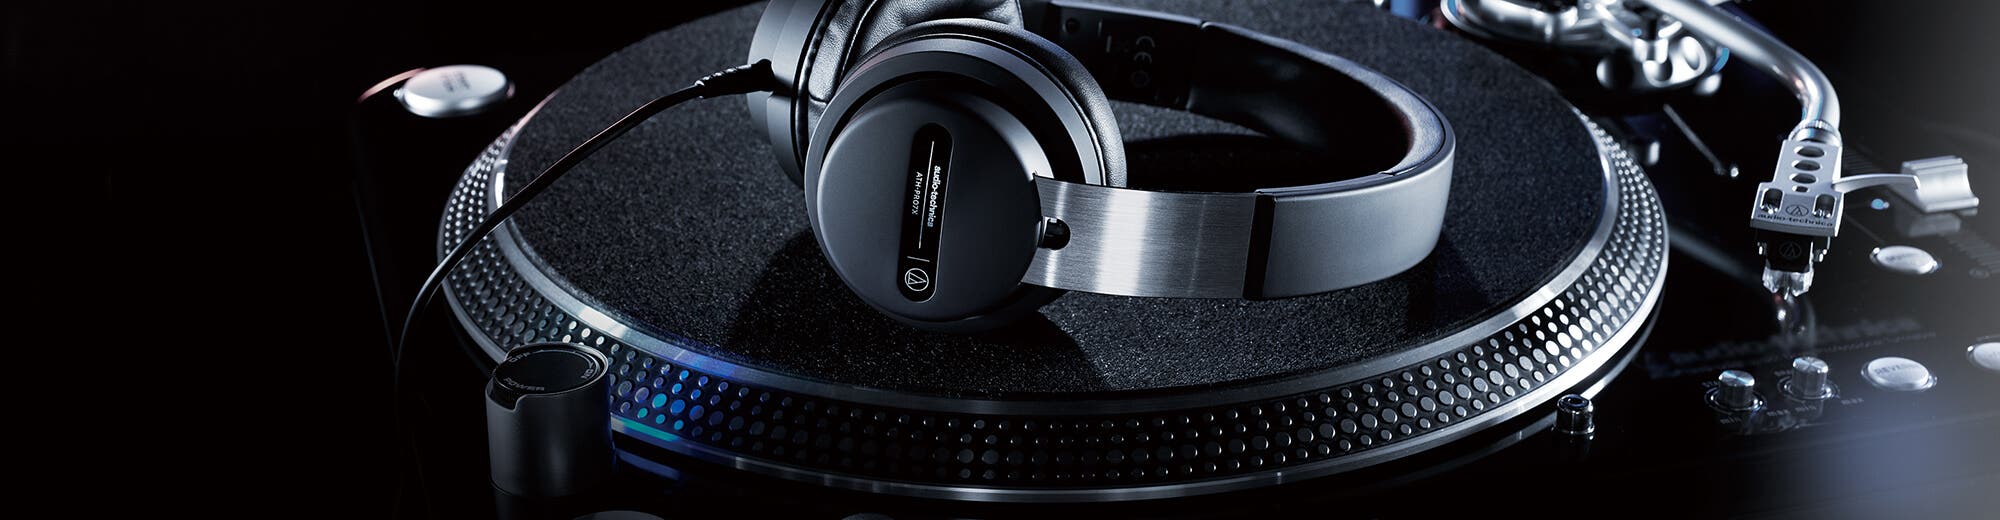 DJ - Best For - Headphones